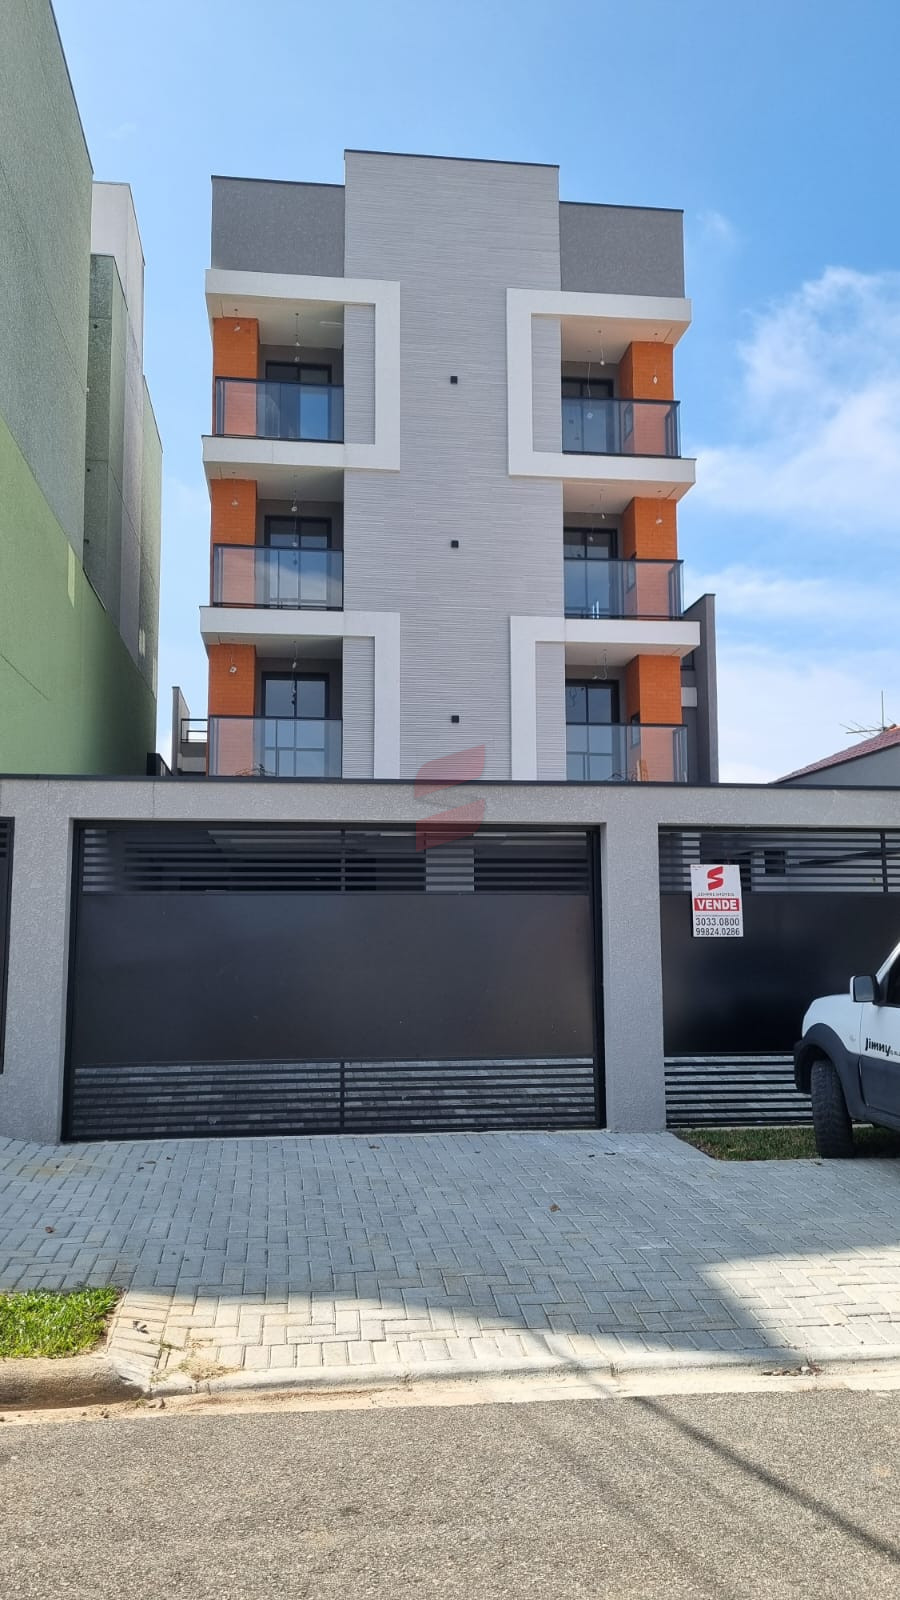 APARTAMENTO com 3 dormitórios à venda com 80.8m² por R$ 389.000,00 no bairro Afonso Pena - SÃO JOSÉ DOS PINHAIS / PR